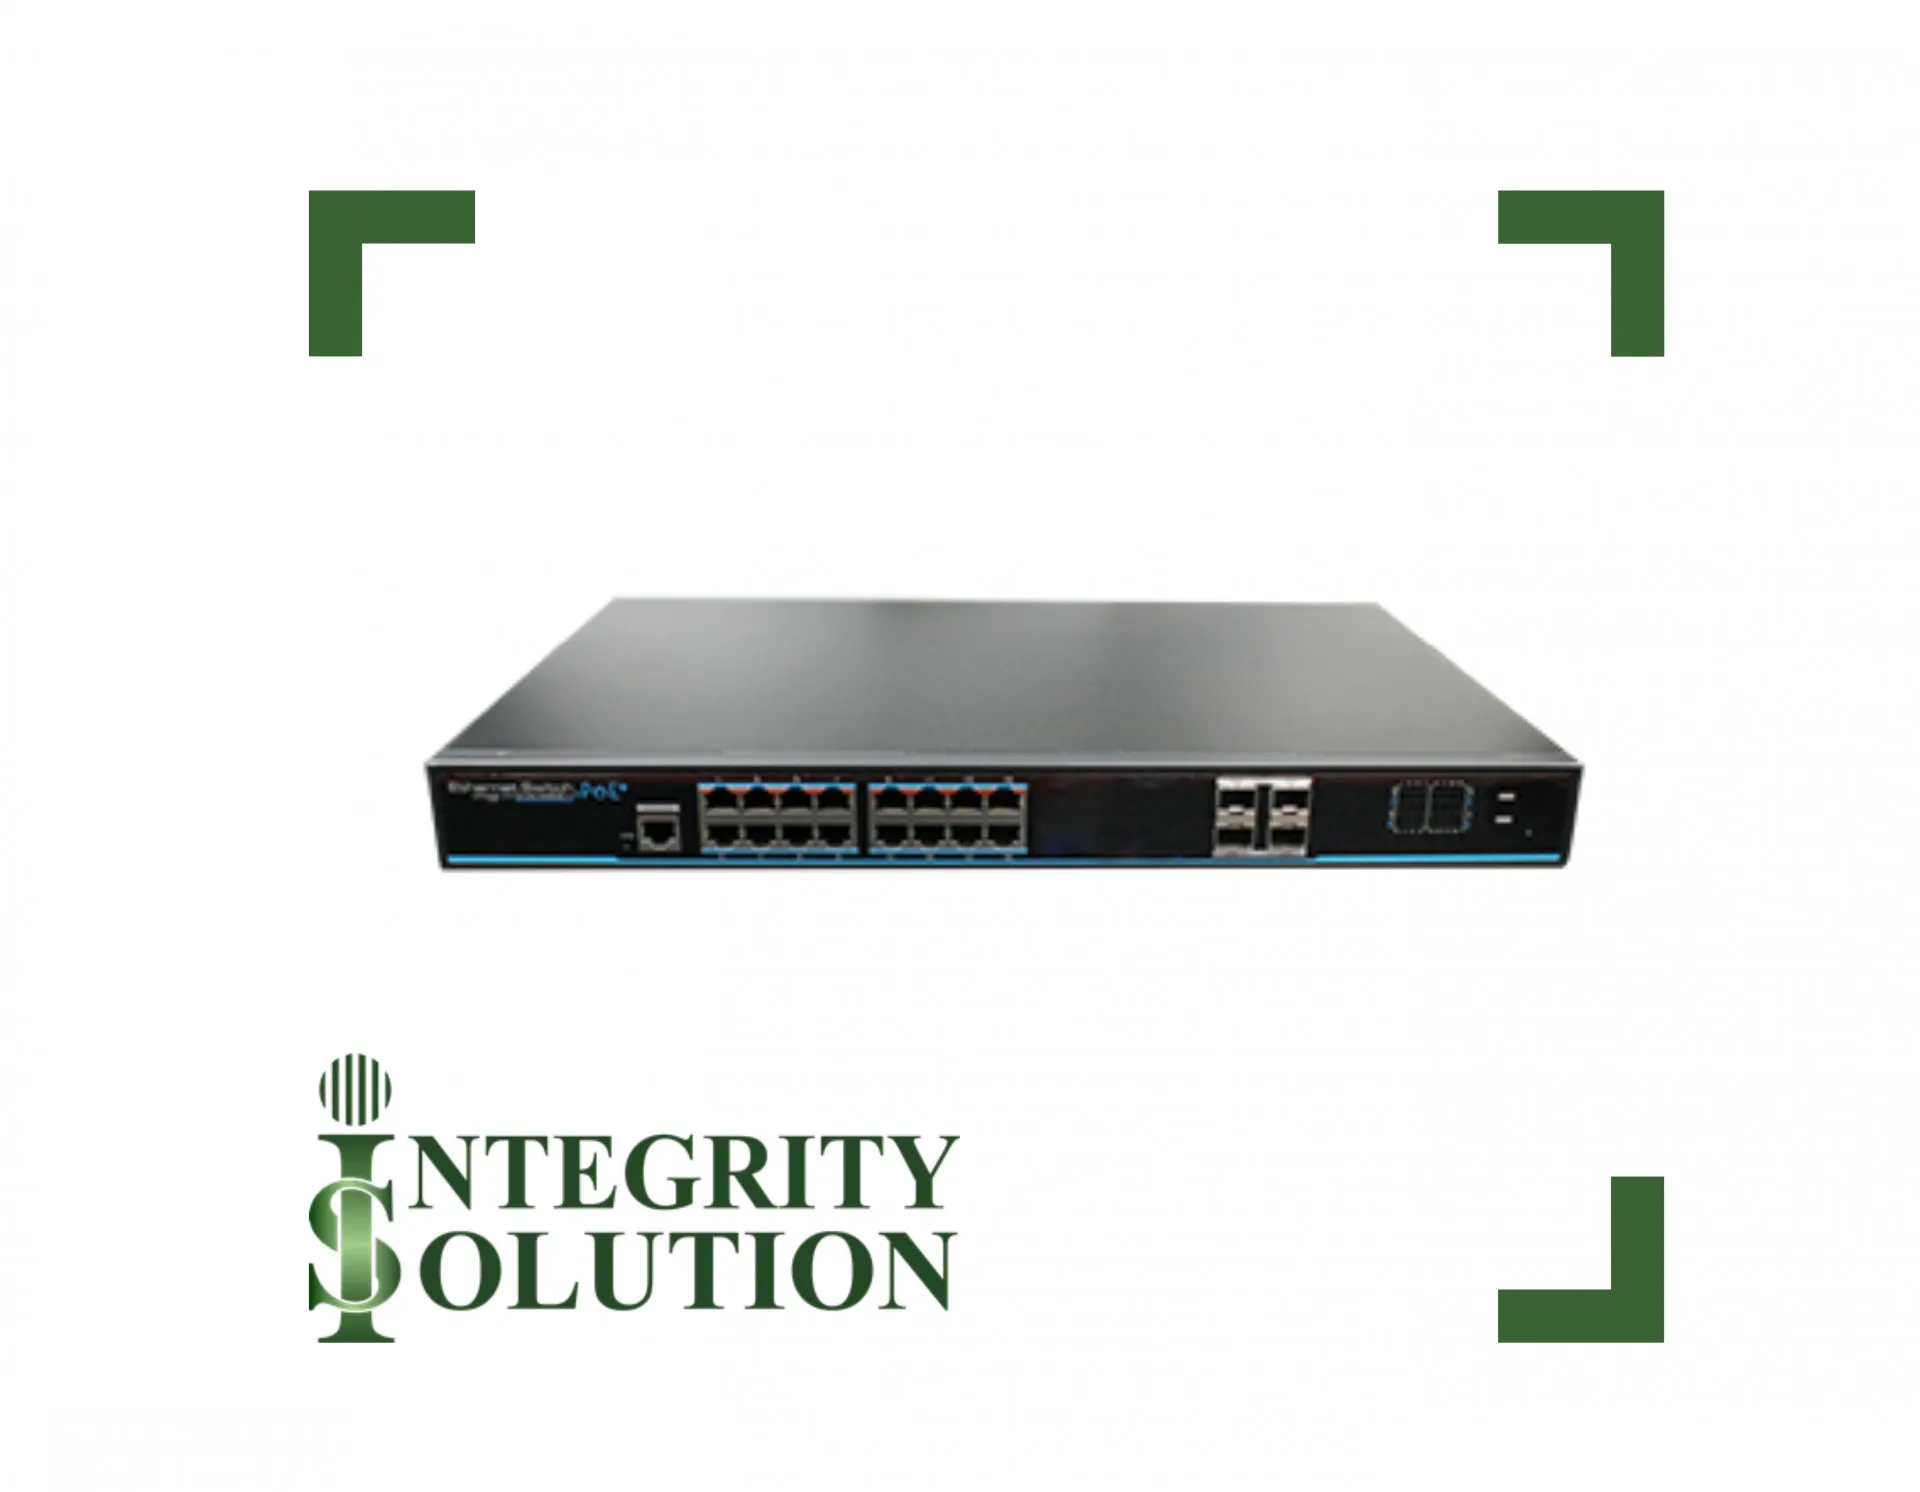 Utepo Коммутатор UTP3-GSW1604S-MTP250 16-портовый гигабитный POE+, 4 SFP порта Integrity Solution#1